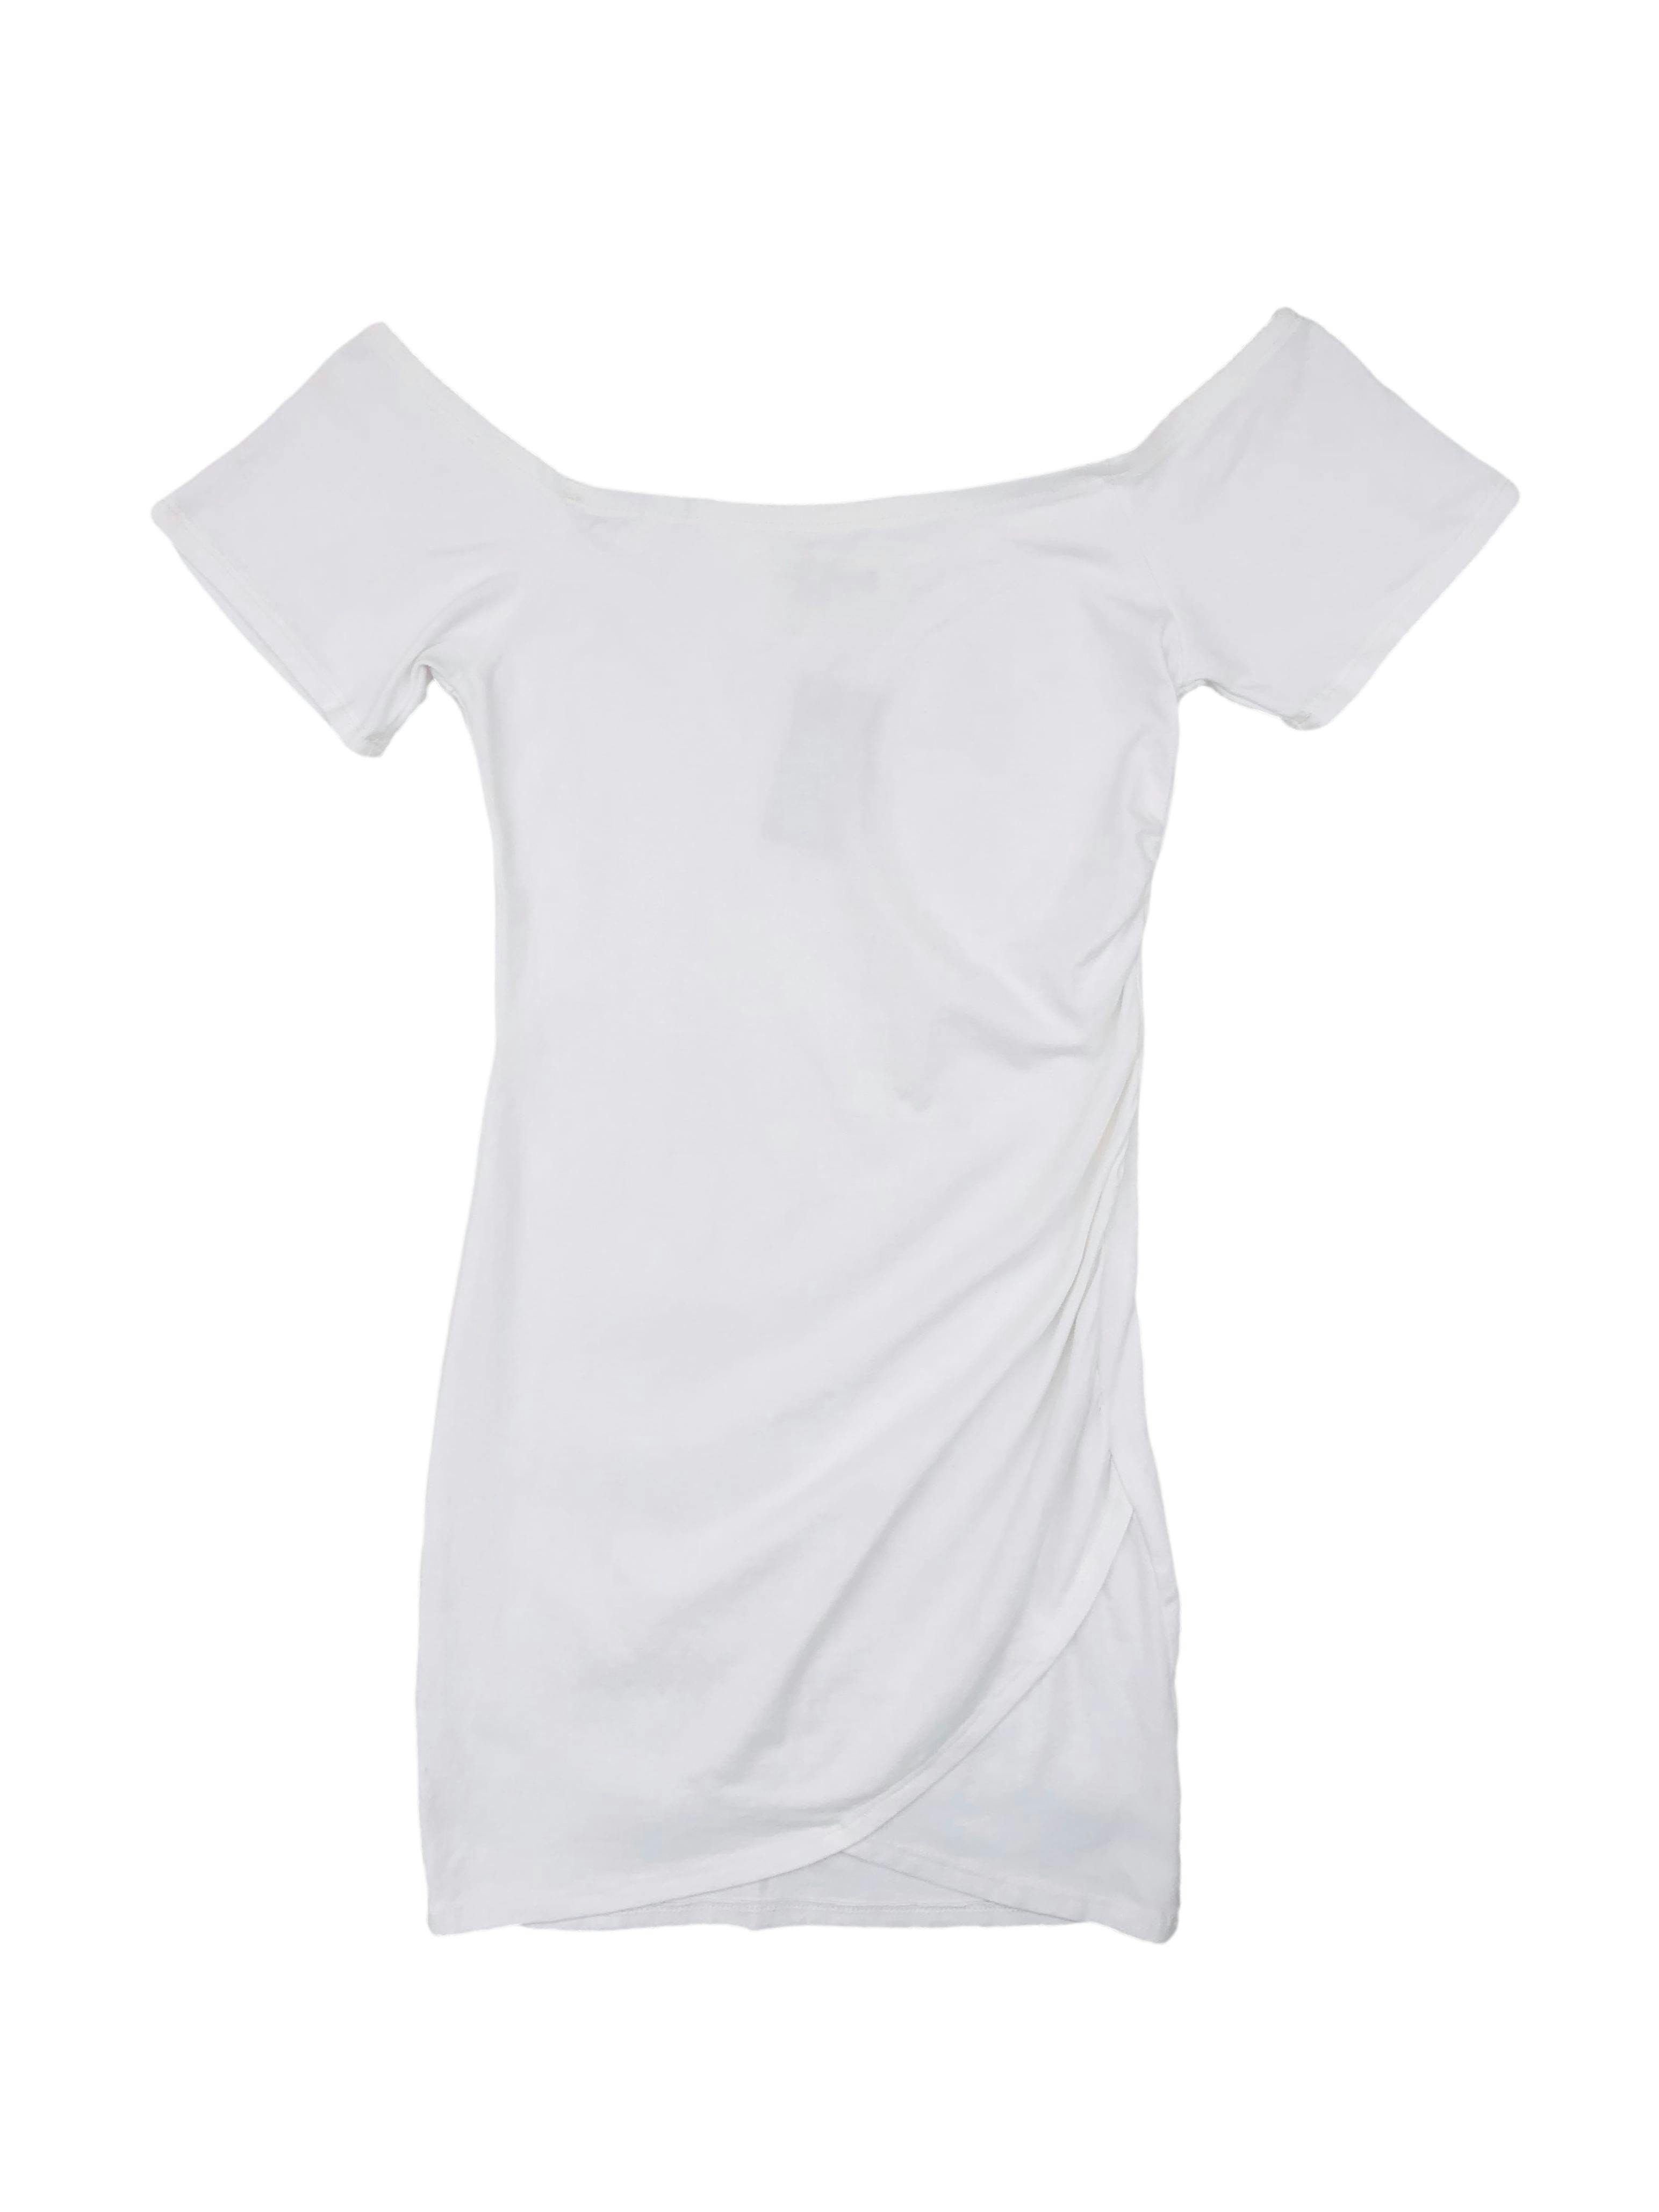 Vestido blanco de hombros descubiertos, tela tipo algodón. Busto: 70cm, Largo: 72cm